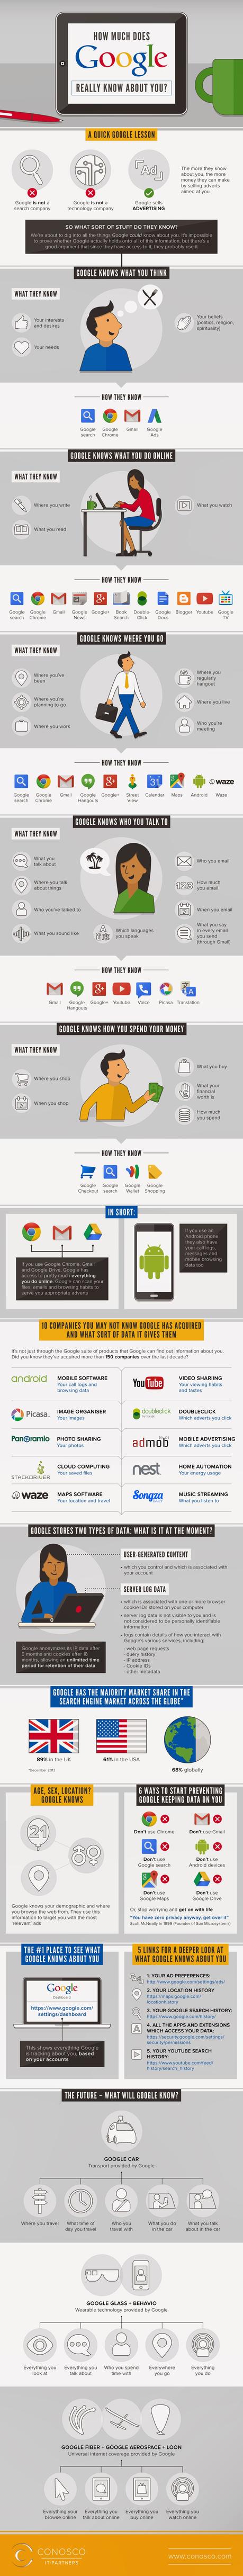 Lo que Google sabe y sabrá sobre tus hábitos online